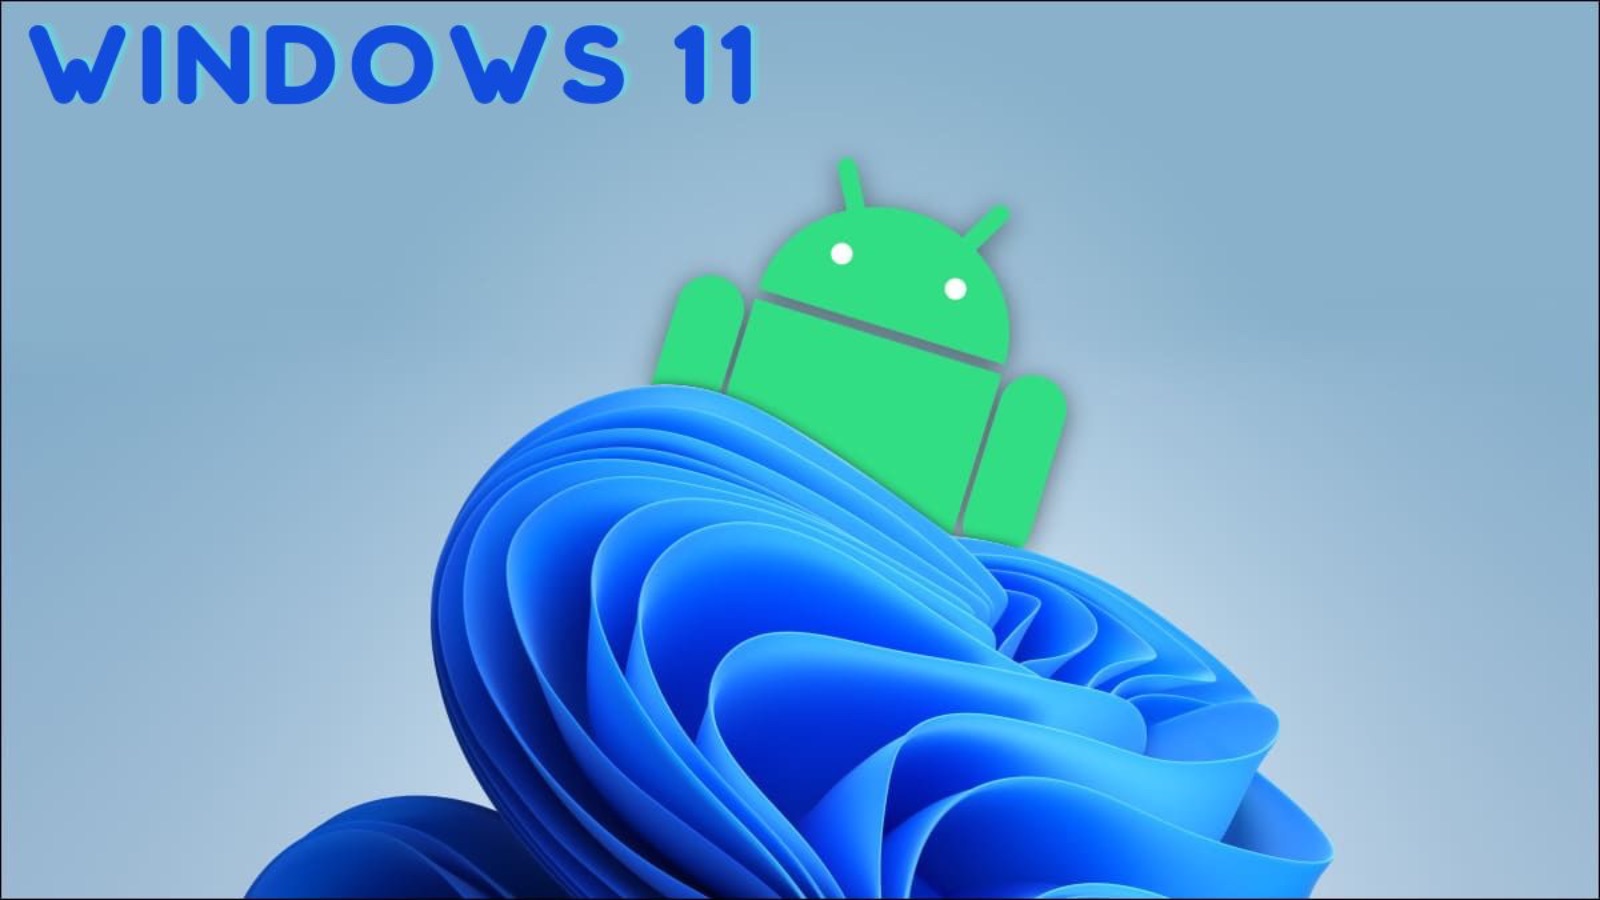 Addio alle app Android su Windows 11, Microsoft chiude ufficialmente